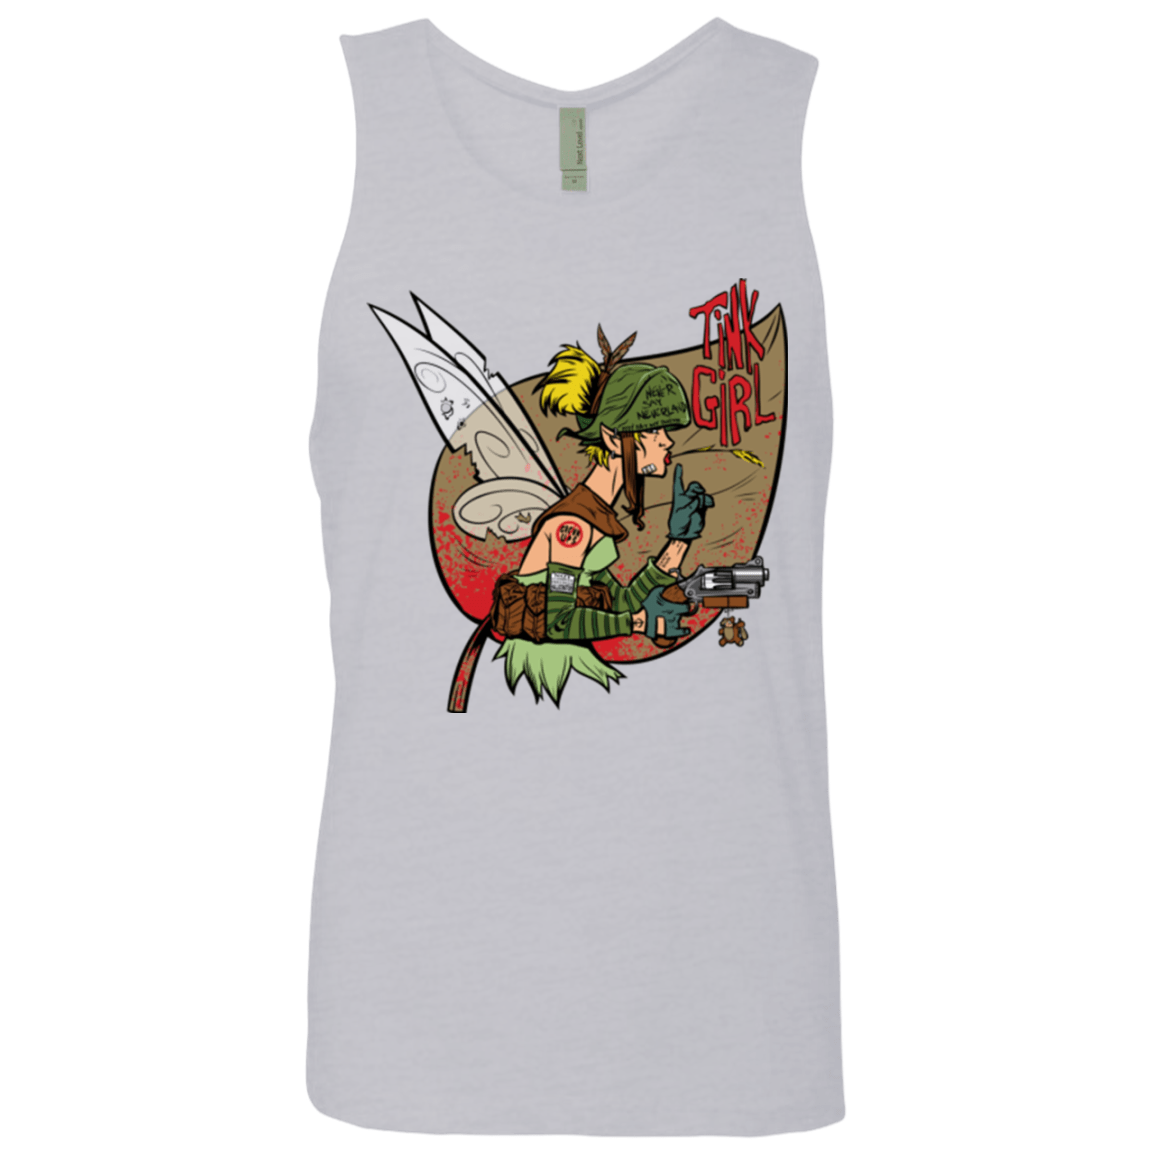 T-Shirts Heather Grey / Small Tink Girl Men's Premium Tank Top